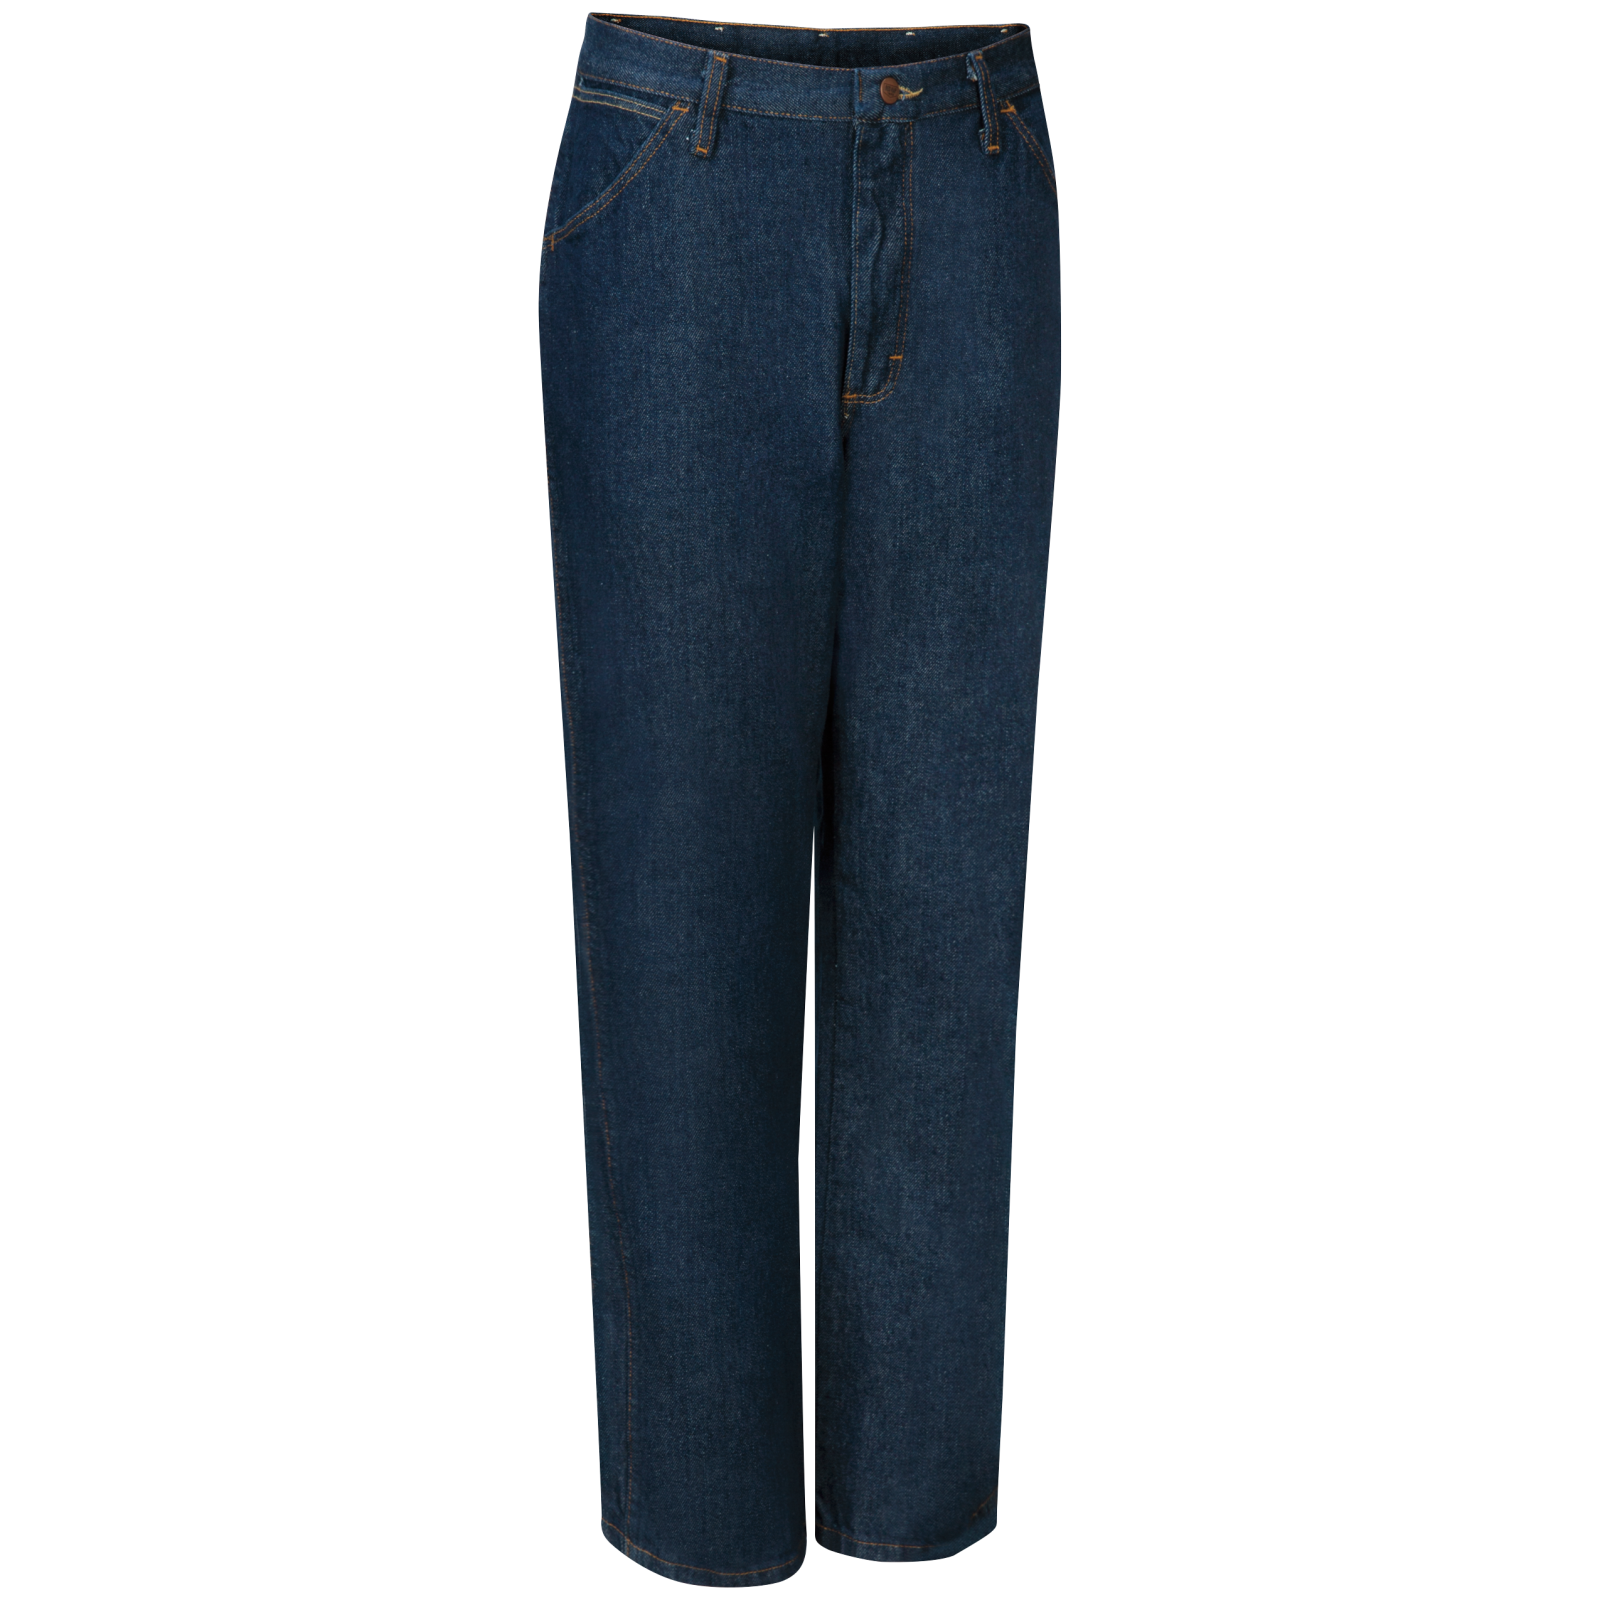 levis blue jeans